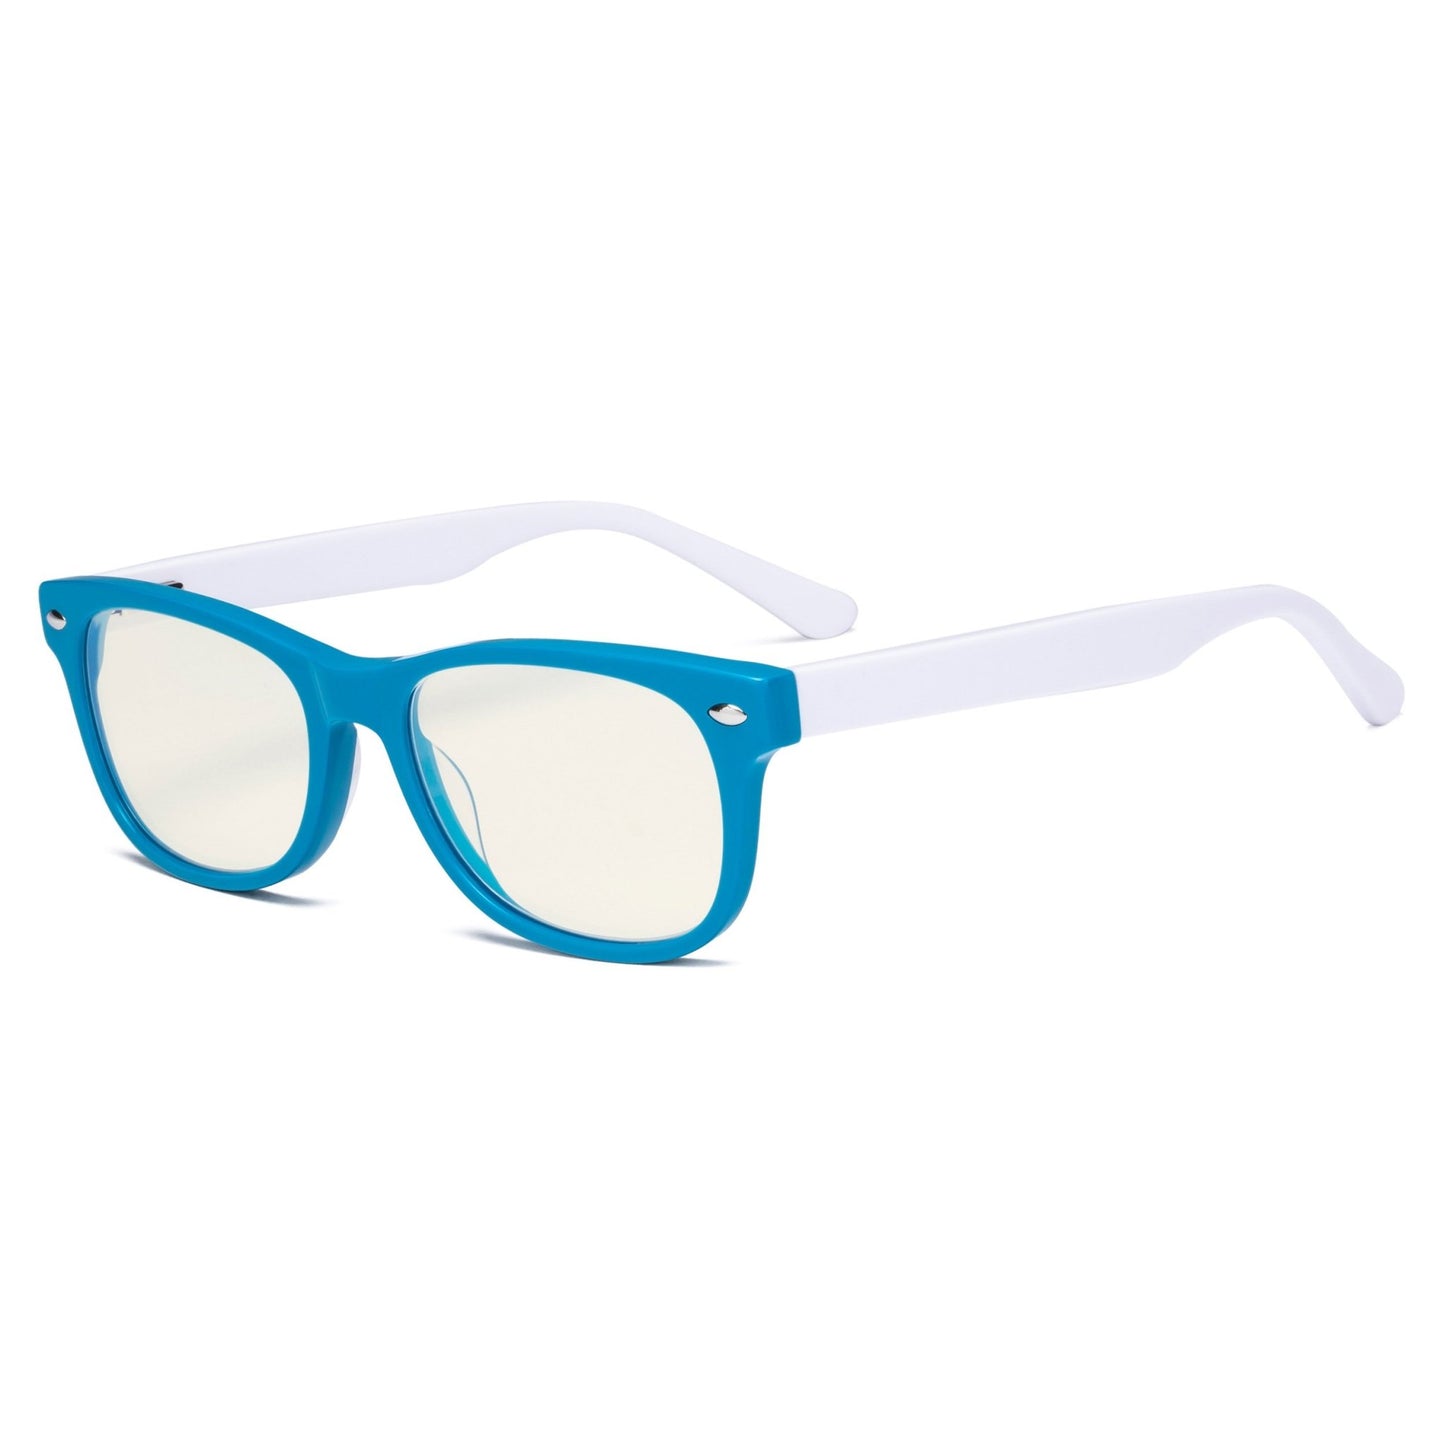 Computer Eyeglasses for Kids Blue/White K05-BB40